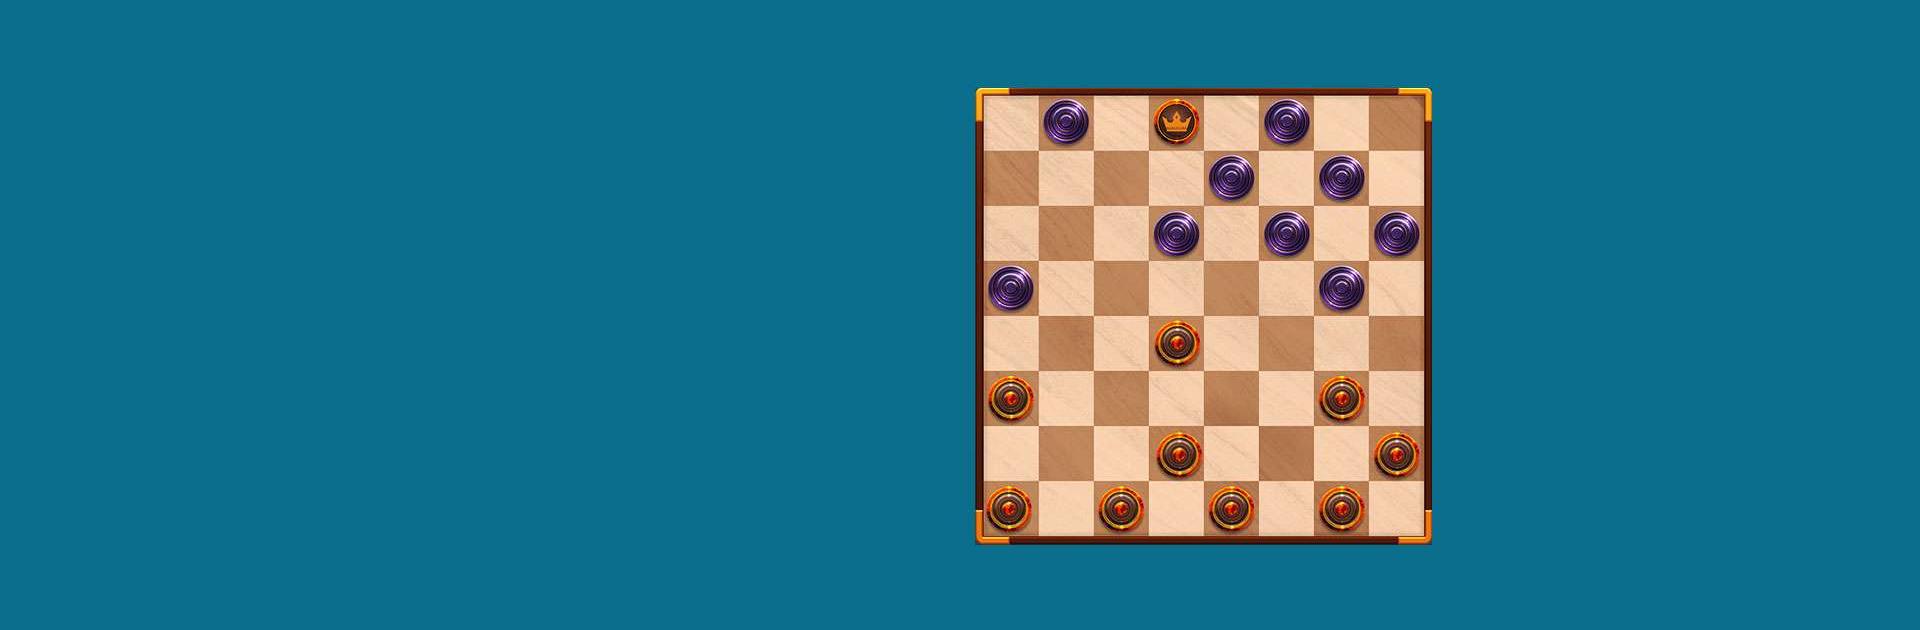 Master Checkers - Jogue dama com um amigo ou sozinho em Jogos na Internet